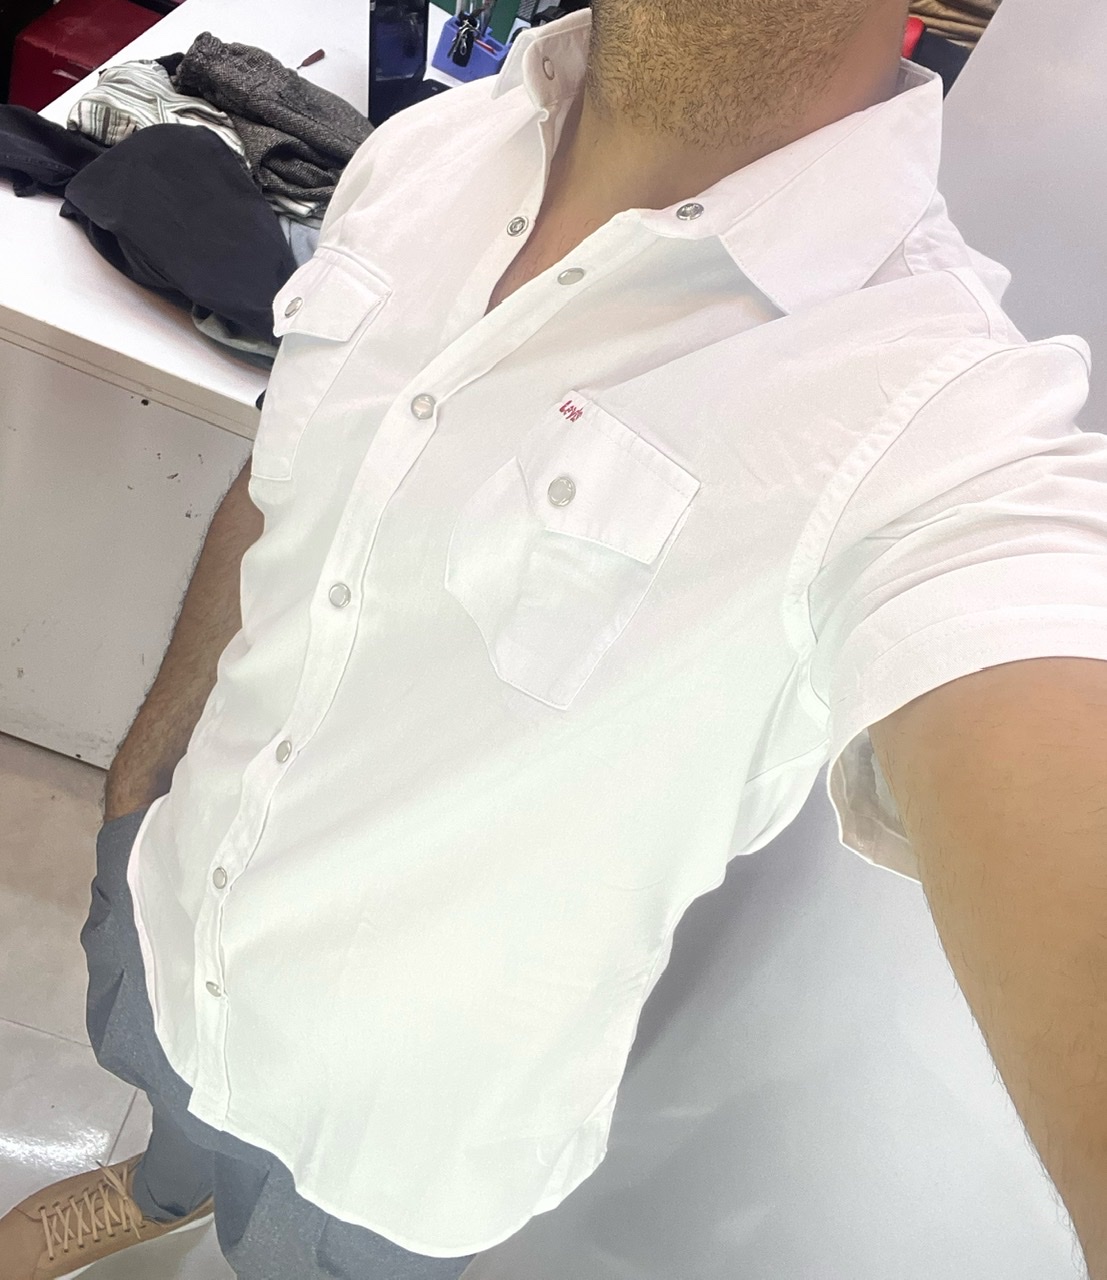 پیراهن سفید دوجیب مردانه پارچه پوپلین دکمه پرسی بسیار خفن